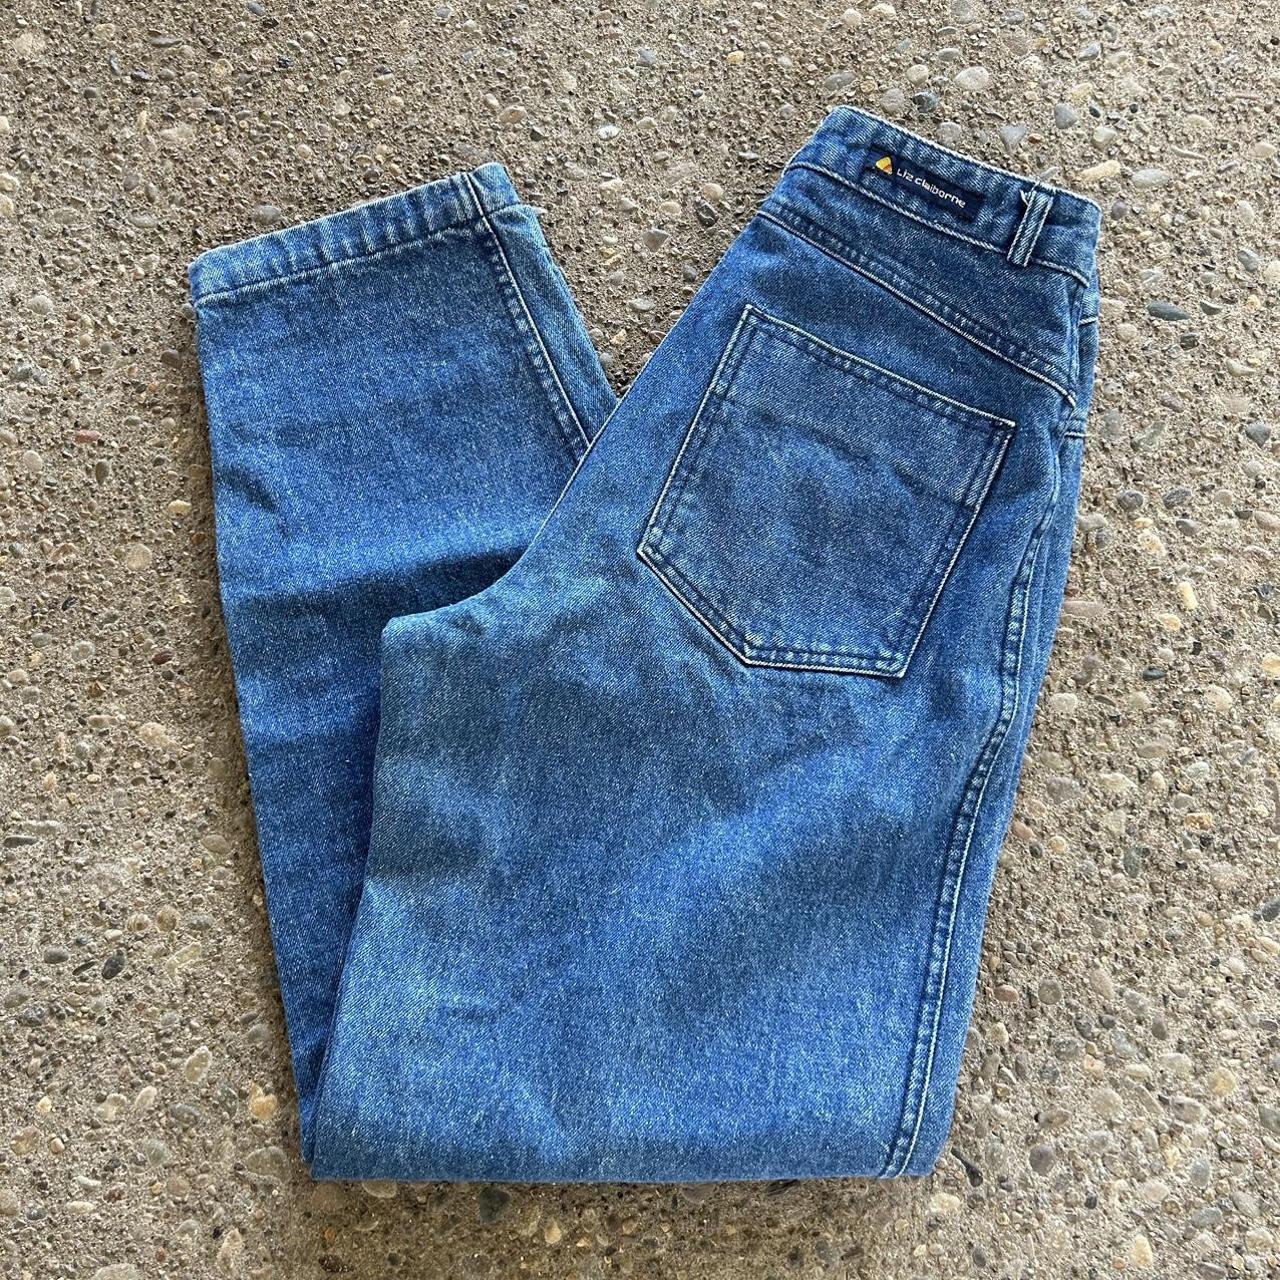 Vintage Liz Claiborne jeans Tagged size 10 woman’s... - Depop